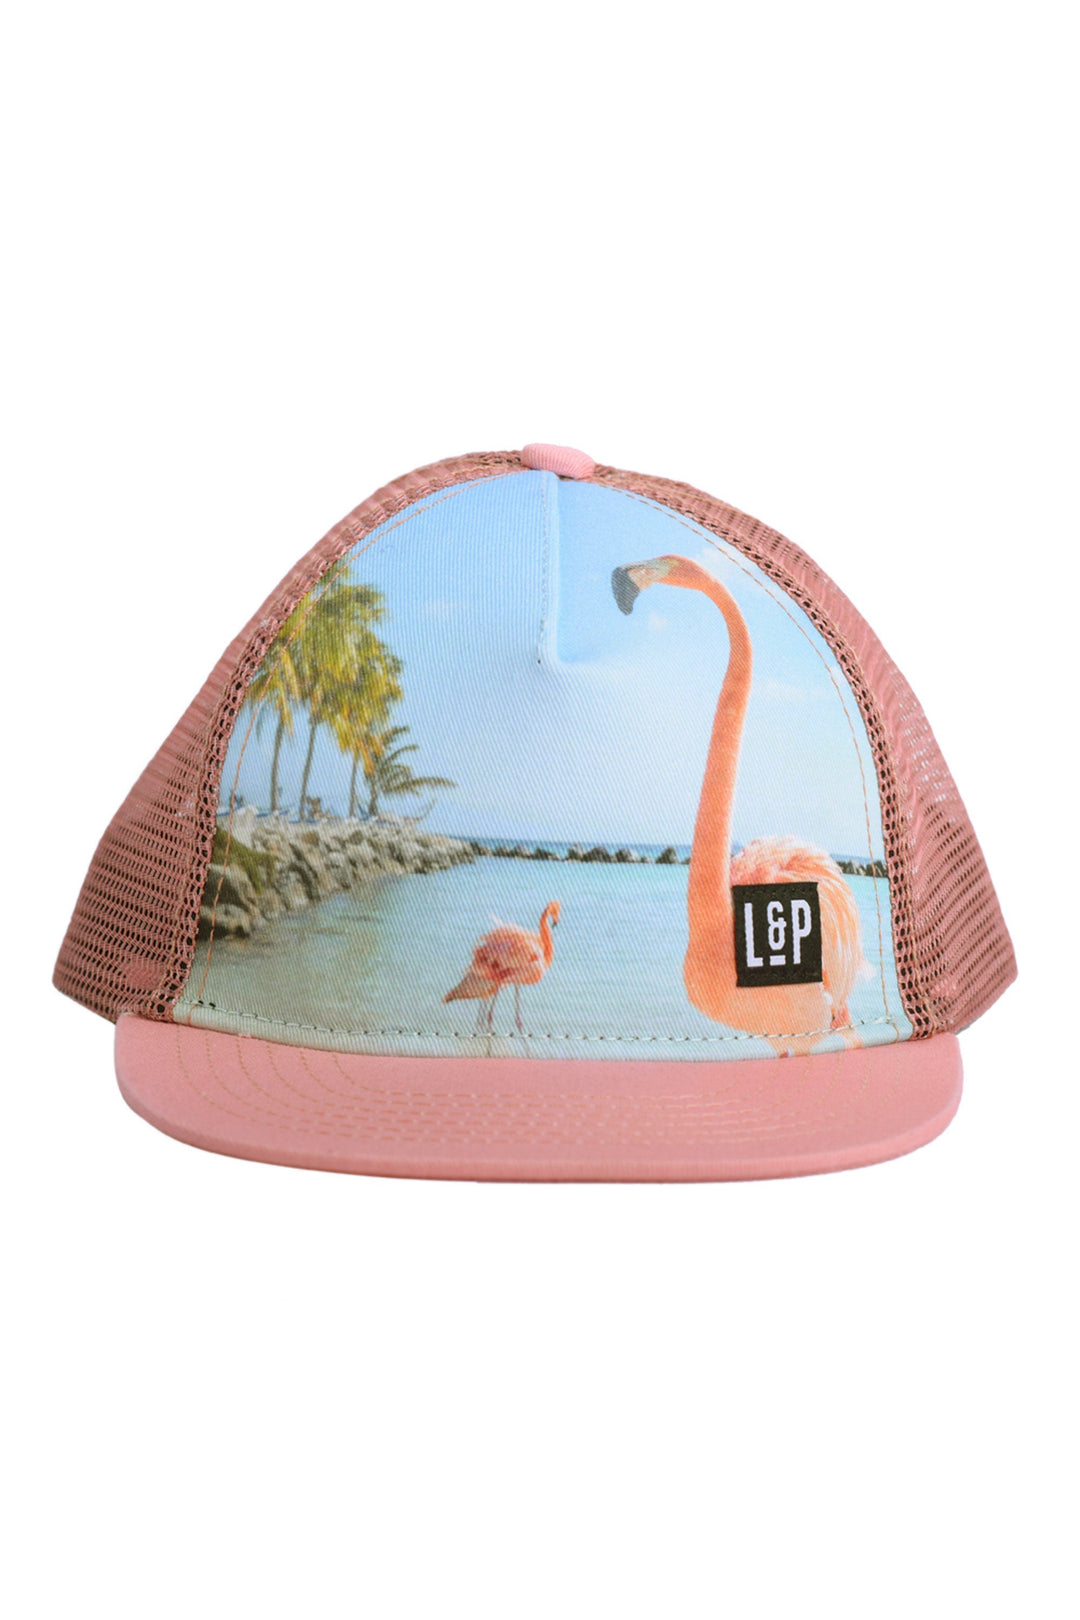 Flamingo Mesh Cap - Fit Simplistic [Junior]